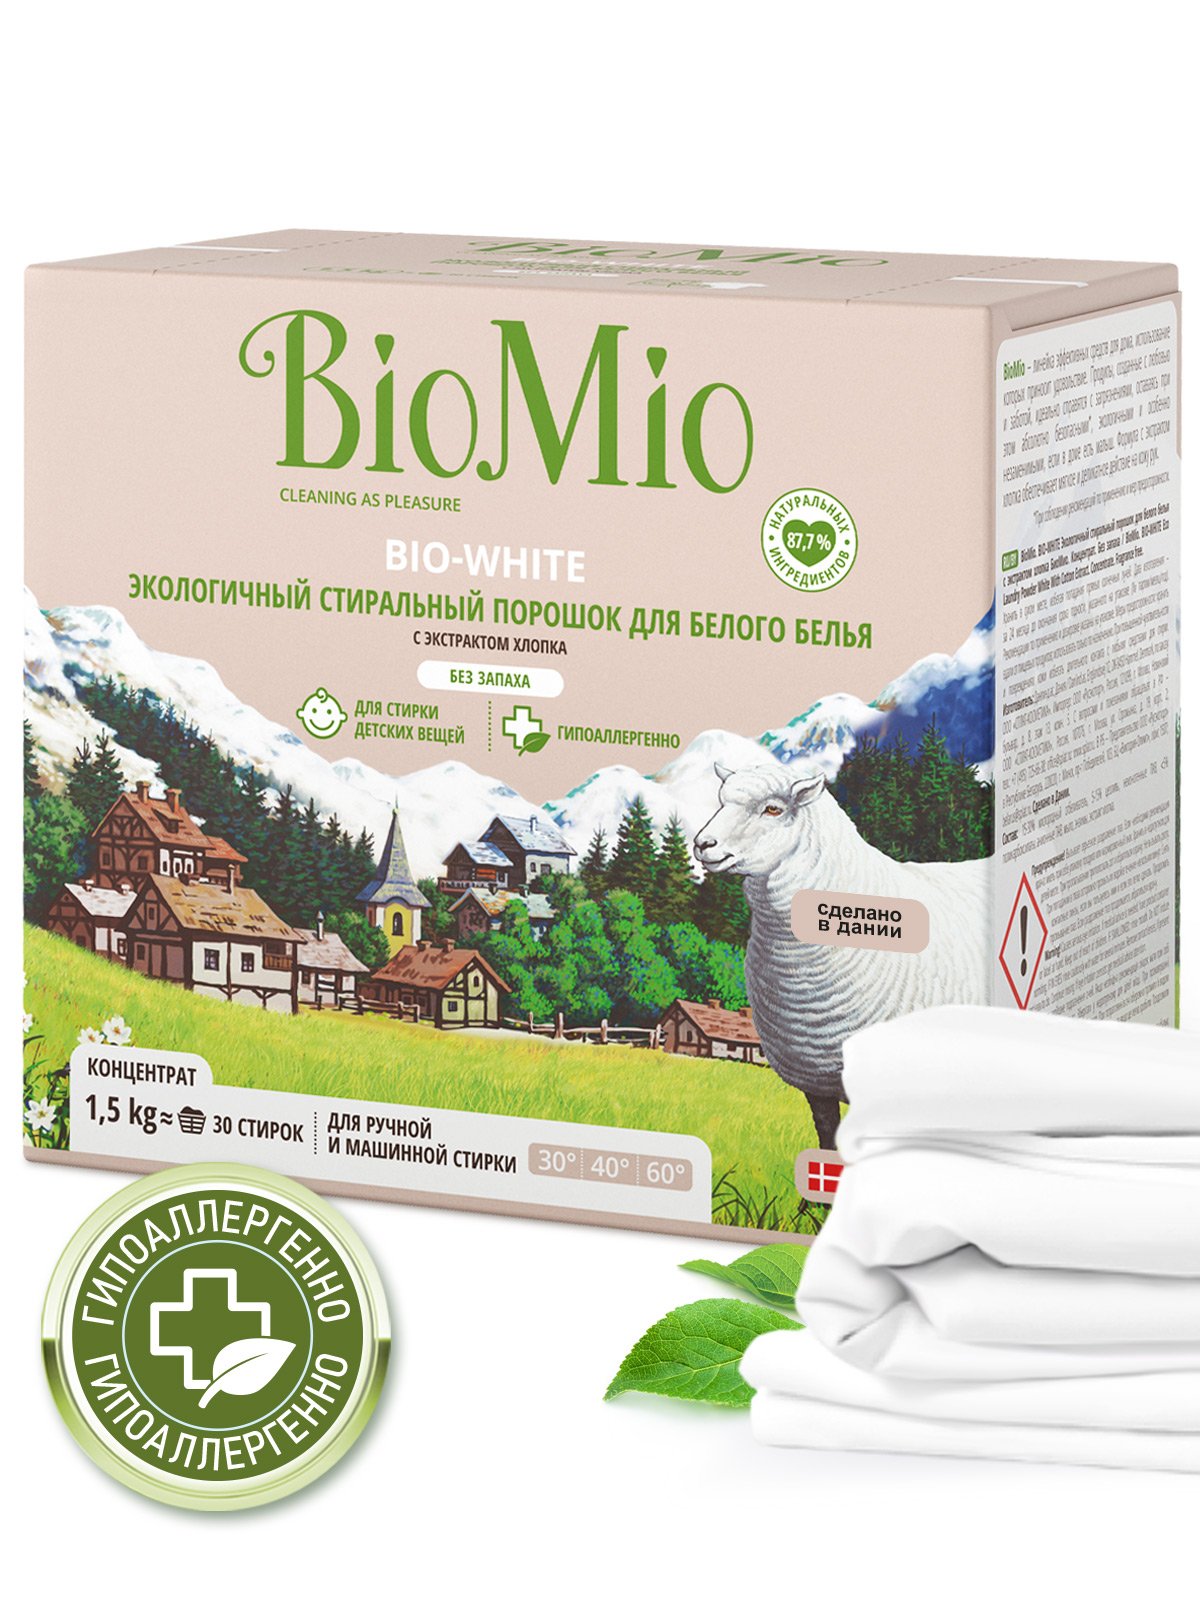 Стиральный порошок для белого белья BioMio Bio-White, концентрат, 1,5 кг - фото 5